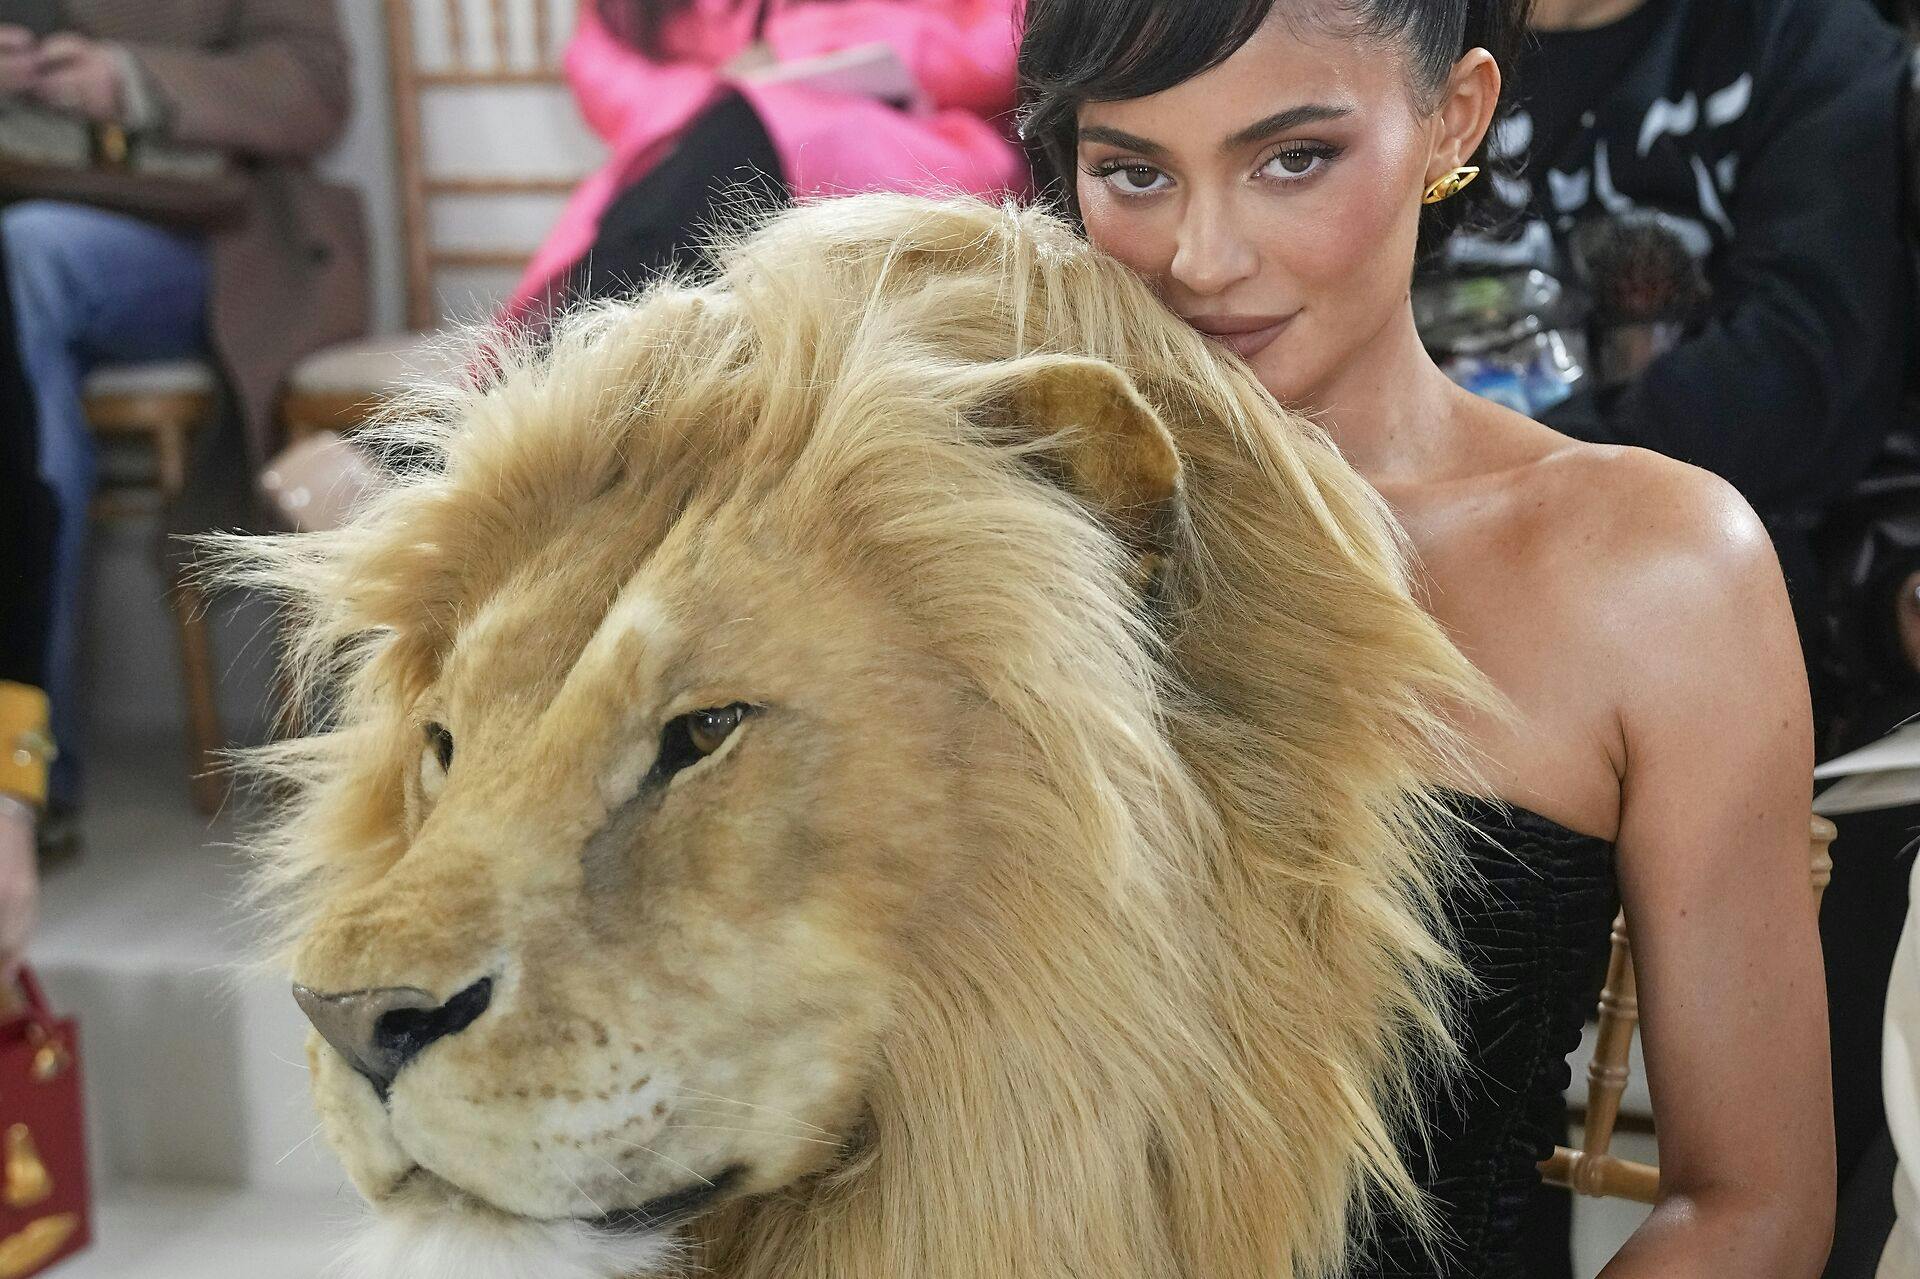 Virkelig så den ud, men det er altså bare skum og bomuld. Løven - ikke Kylie Jenner. Hun er ægte nok.
